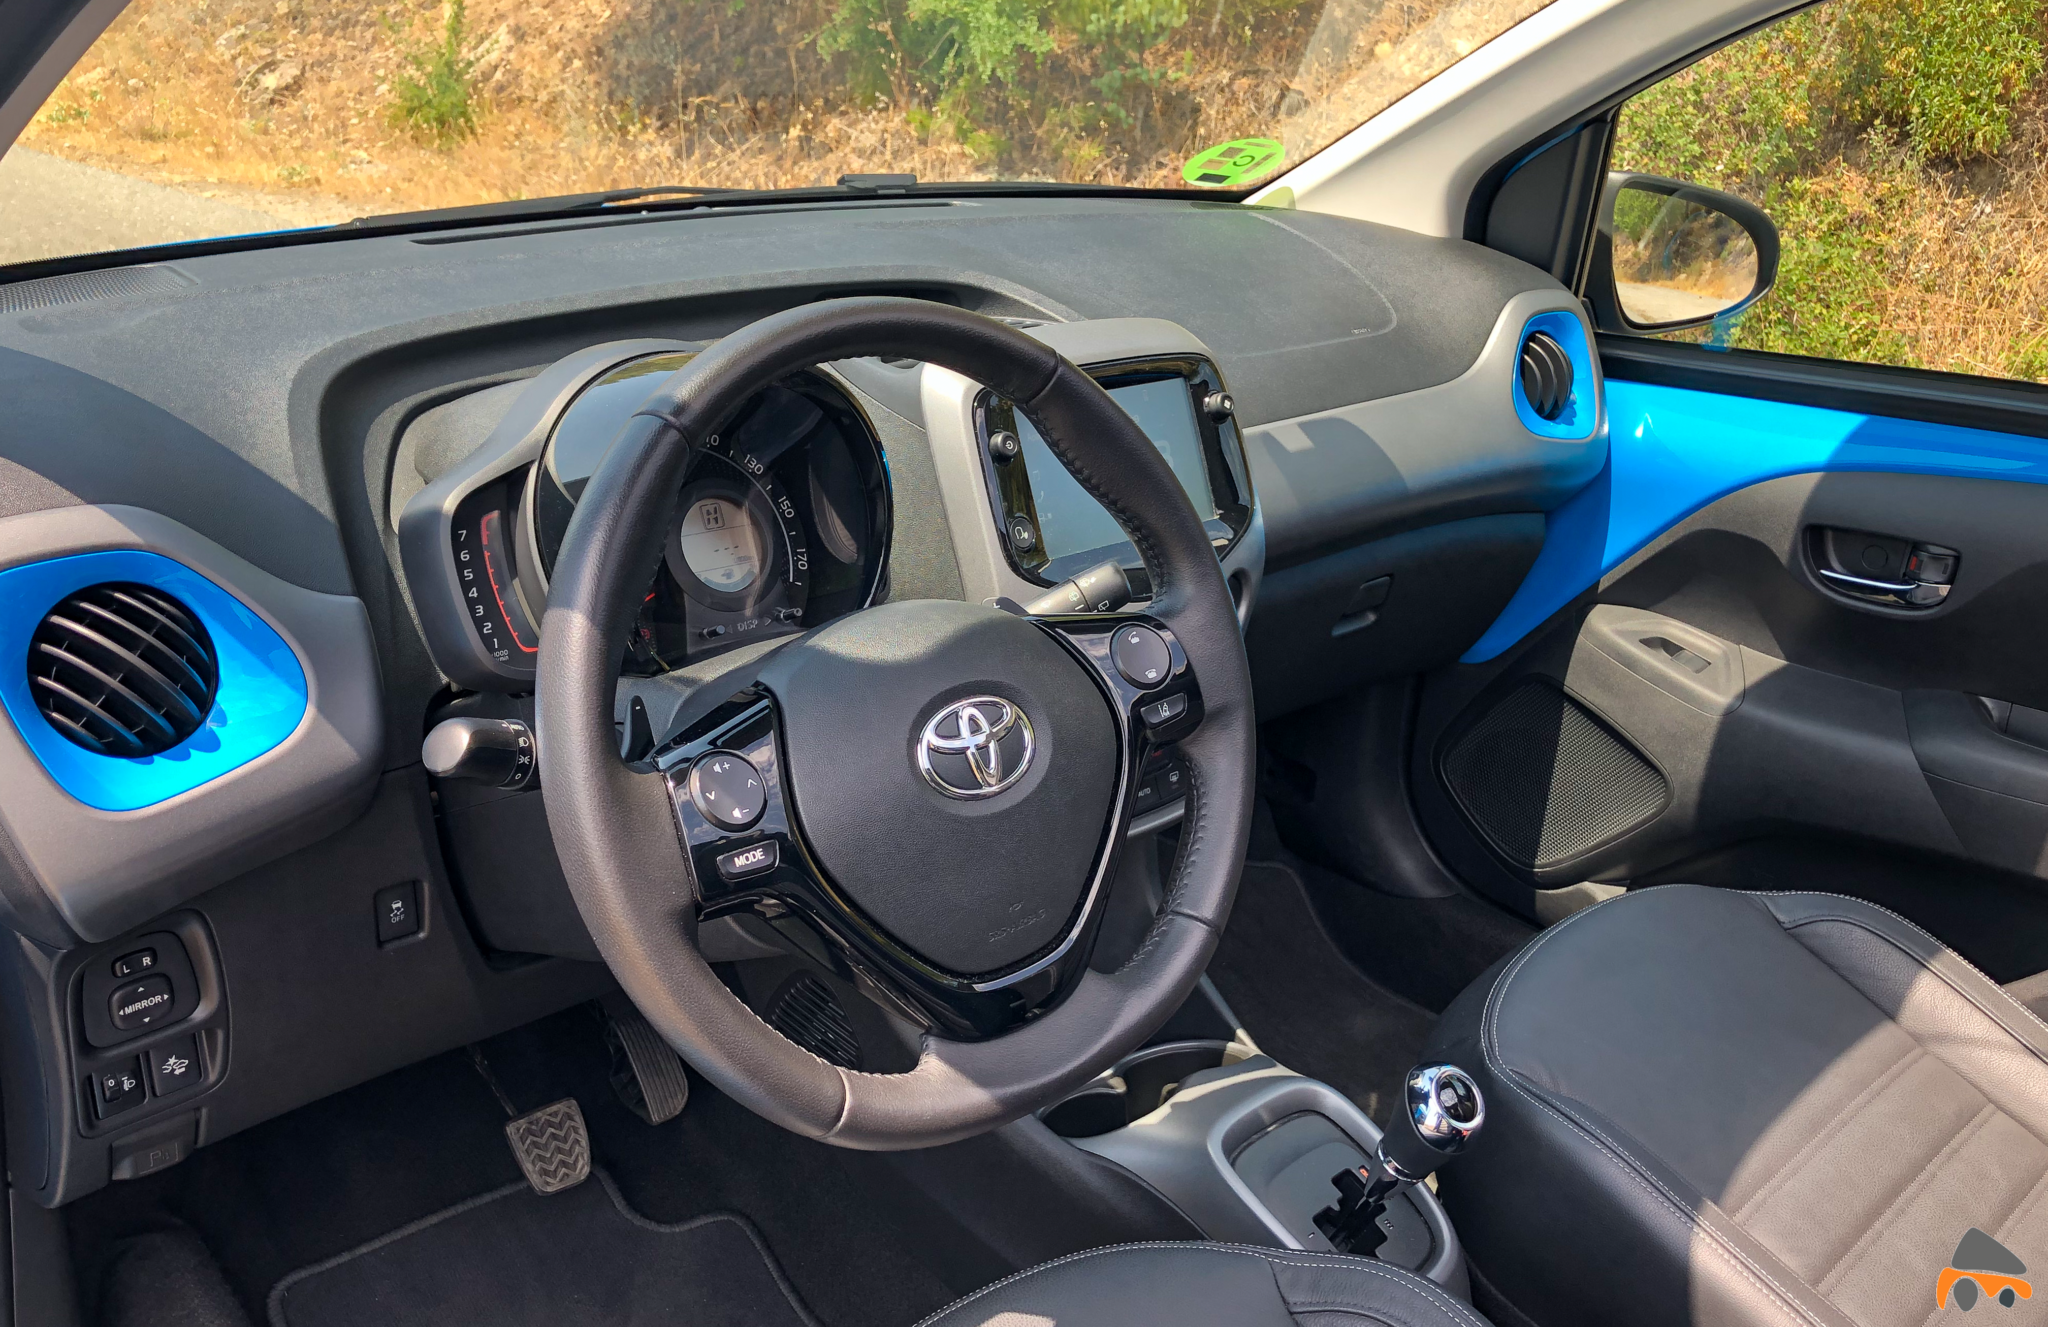 Salpicadero vistal lateral Toyota Aygo - Toyota Aygo 2019 ¿Es una buena alternativa para la ciudad?